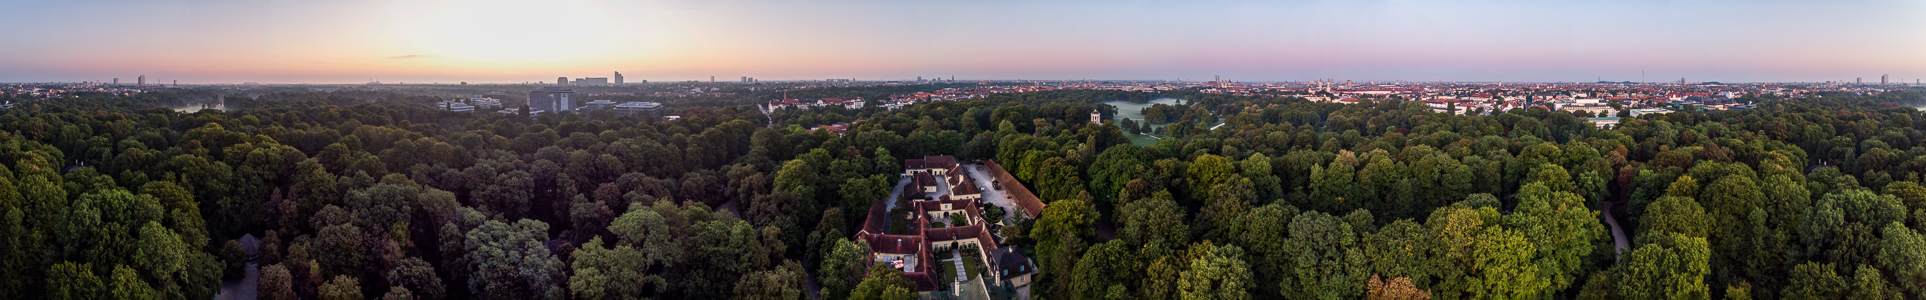 München Englischer Garten Verwaltung des Englischen Gartens Luftbild aerial photo